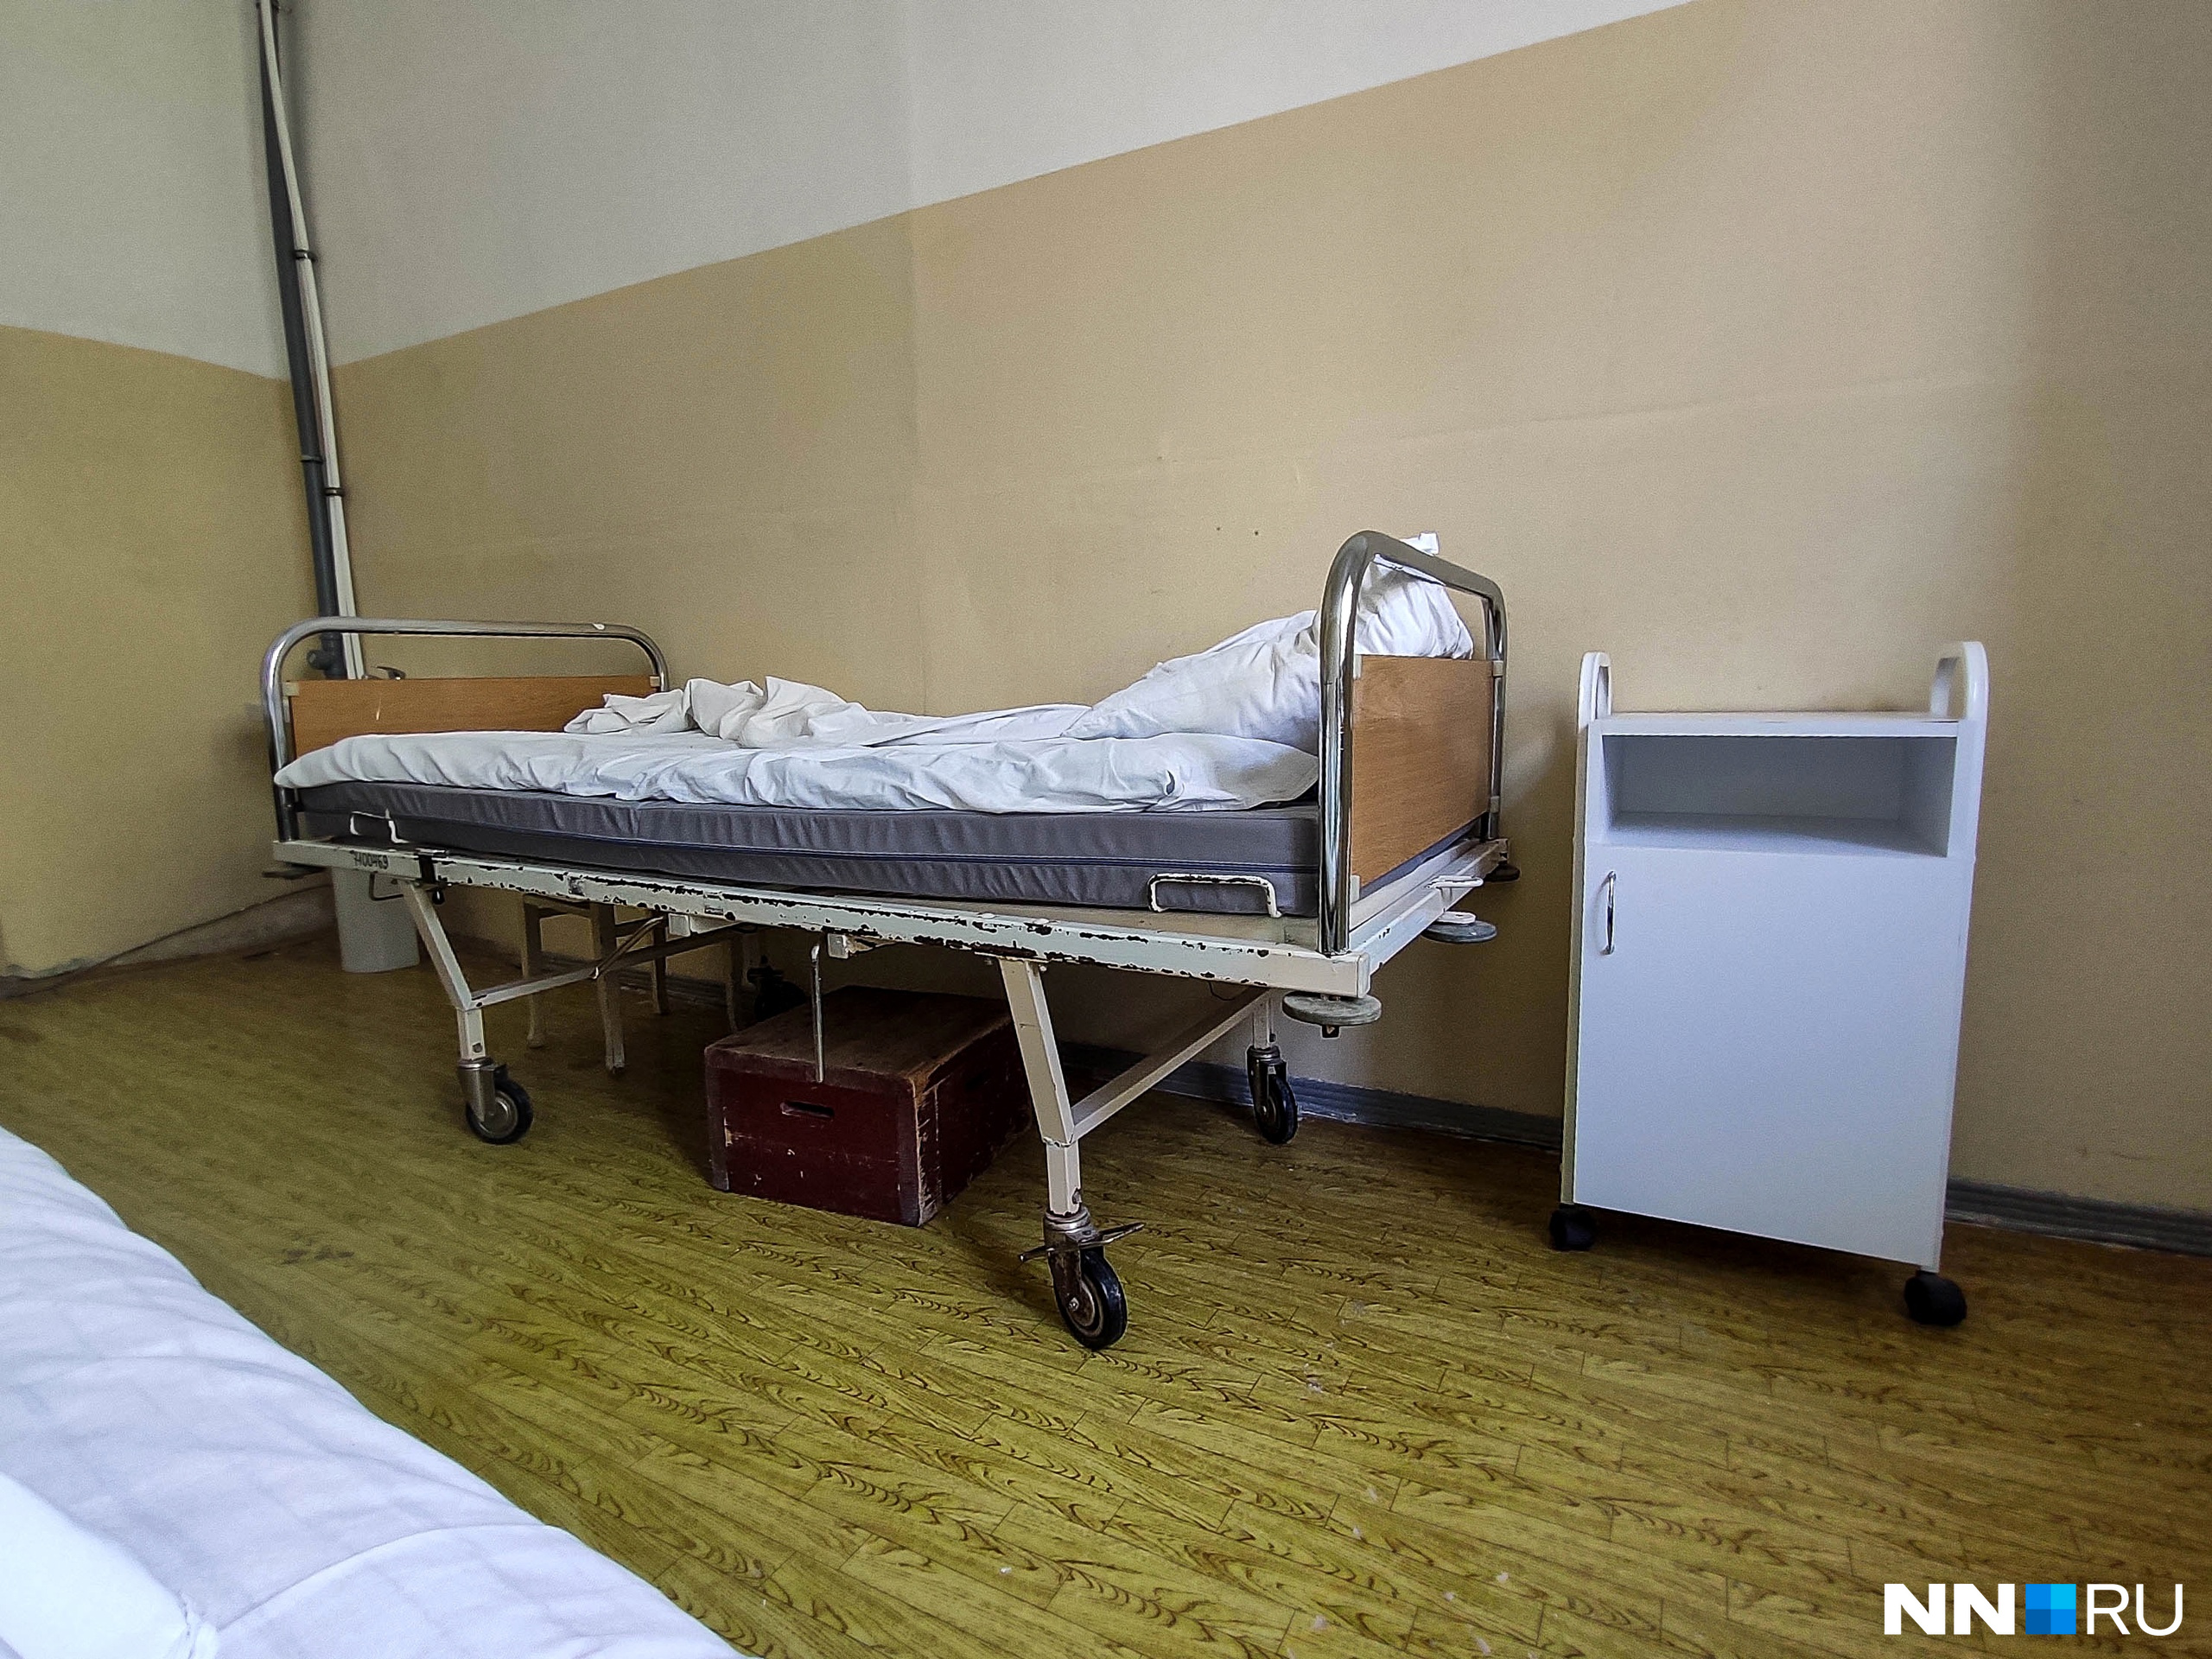 Первый случай смерти от ботулизма в Нижегородской области: умер 24-летний житель Дзержинска